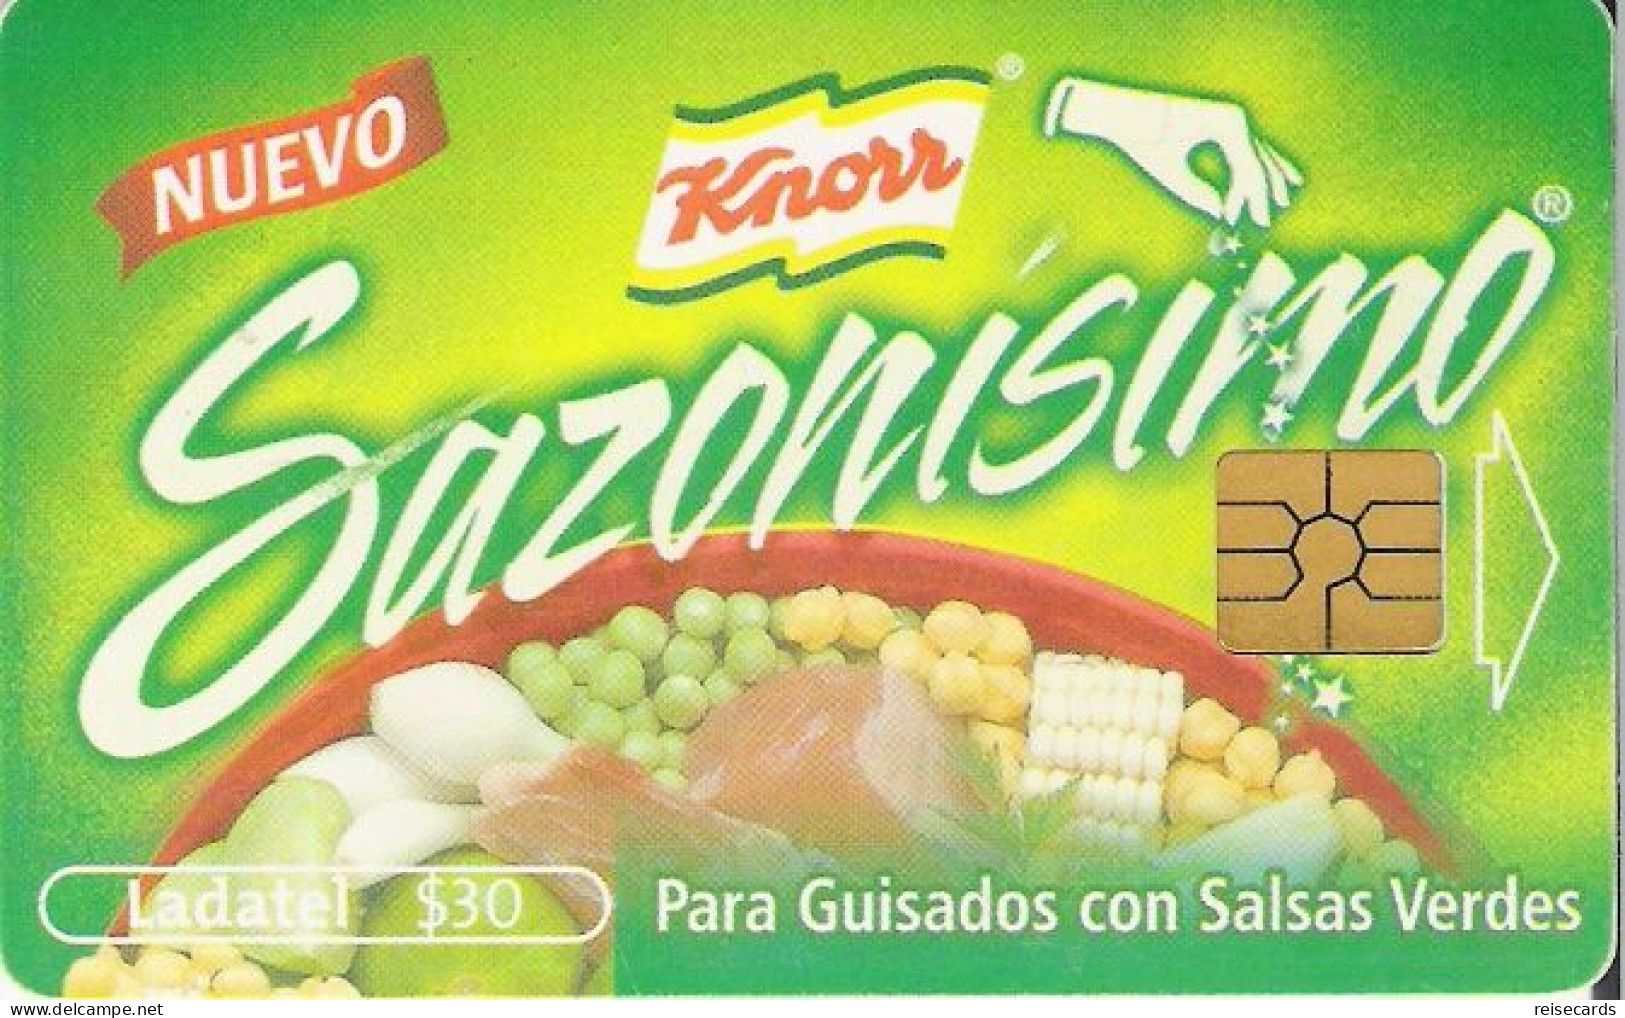 Mexico: Telmex/lLadatel - 2002 Knorr, Sazonisimo - Mexiko